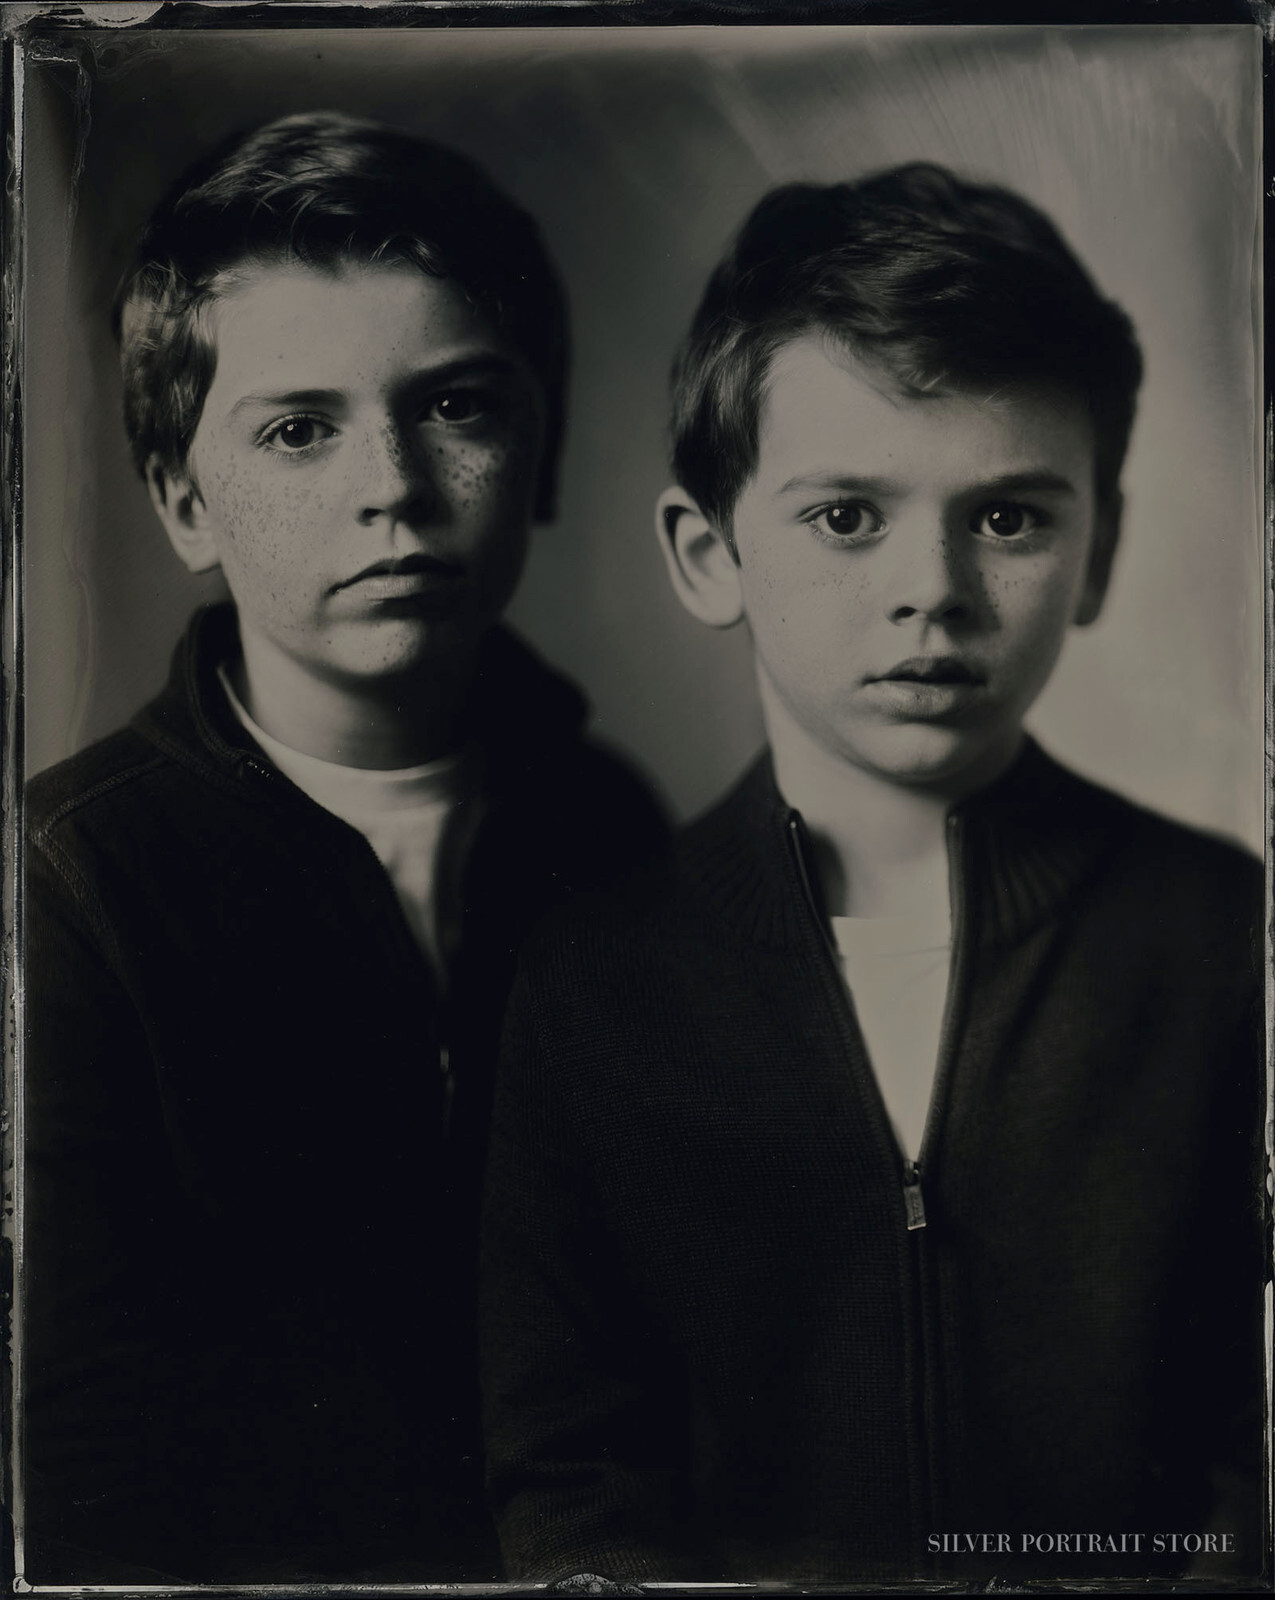 Jack & Alex-Silver Portrait Store-Wet plate collodion-Tintype 20 x 25 cm.